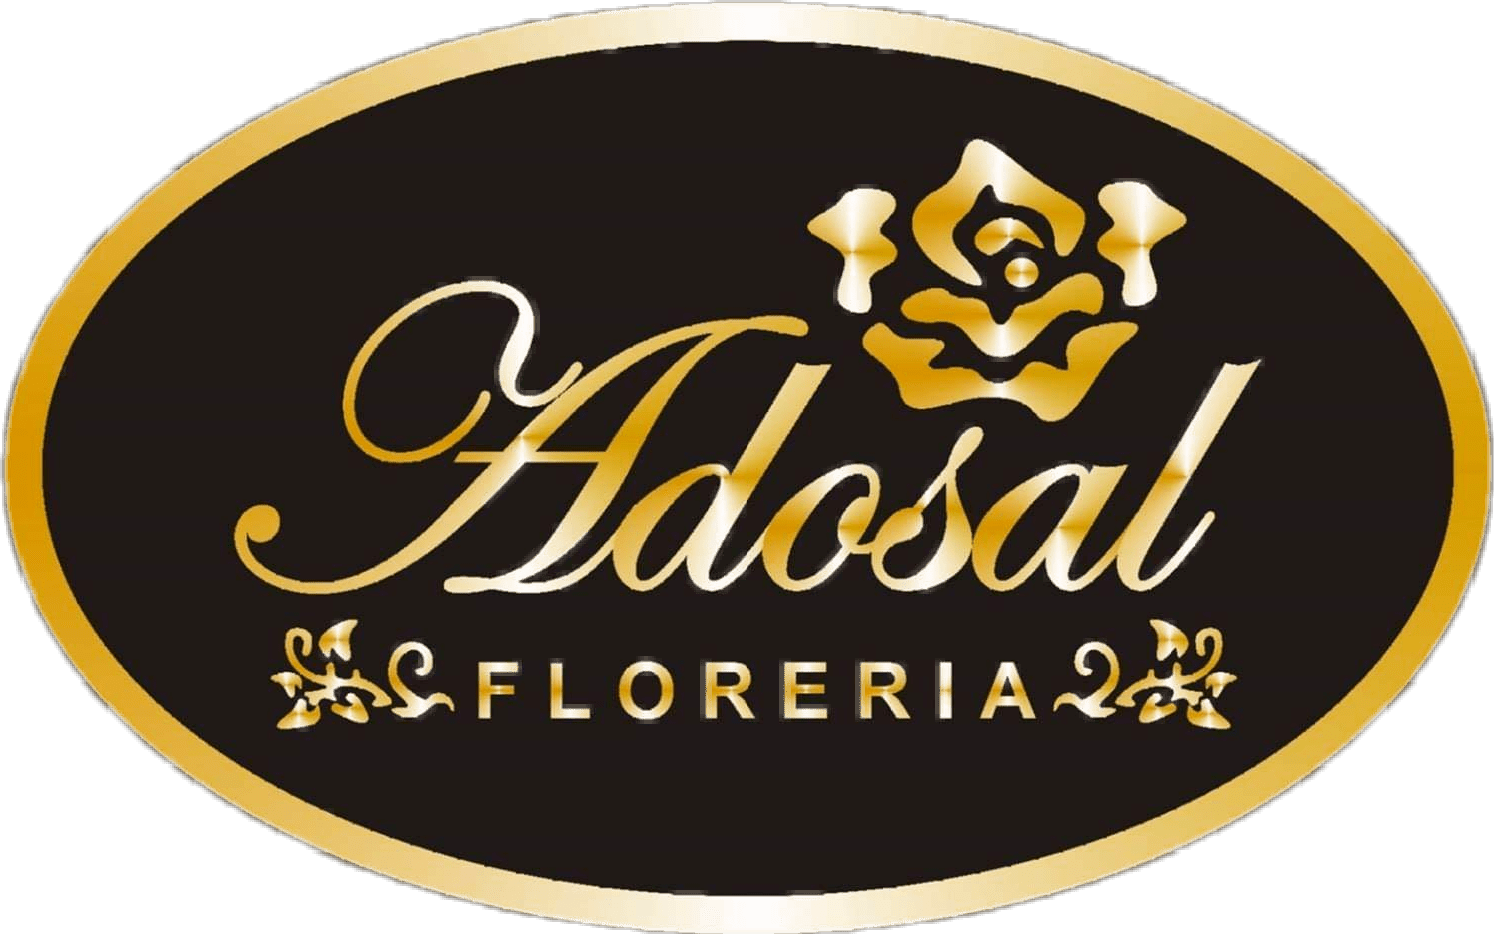 Floreria Adosal 